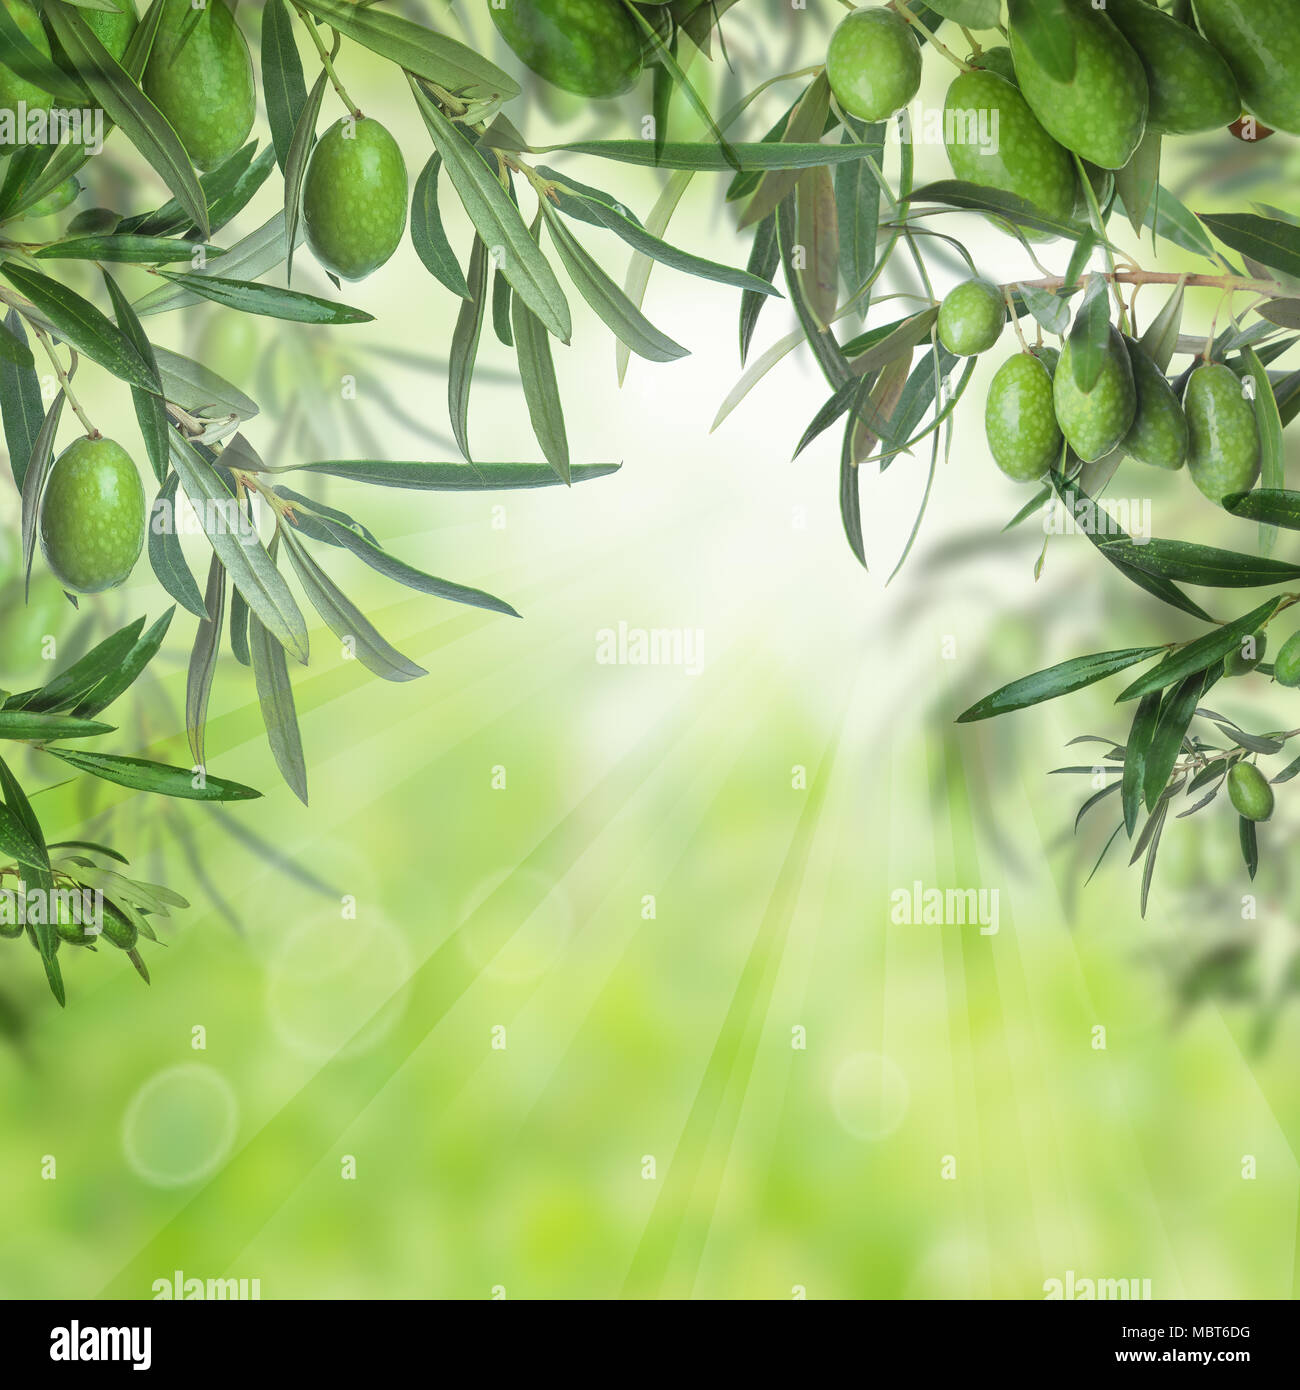 Les olives vertes et les feuilles d'olivier sur fond vert clair bokeh  abstract Photo Stock - Alamy